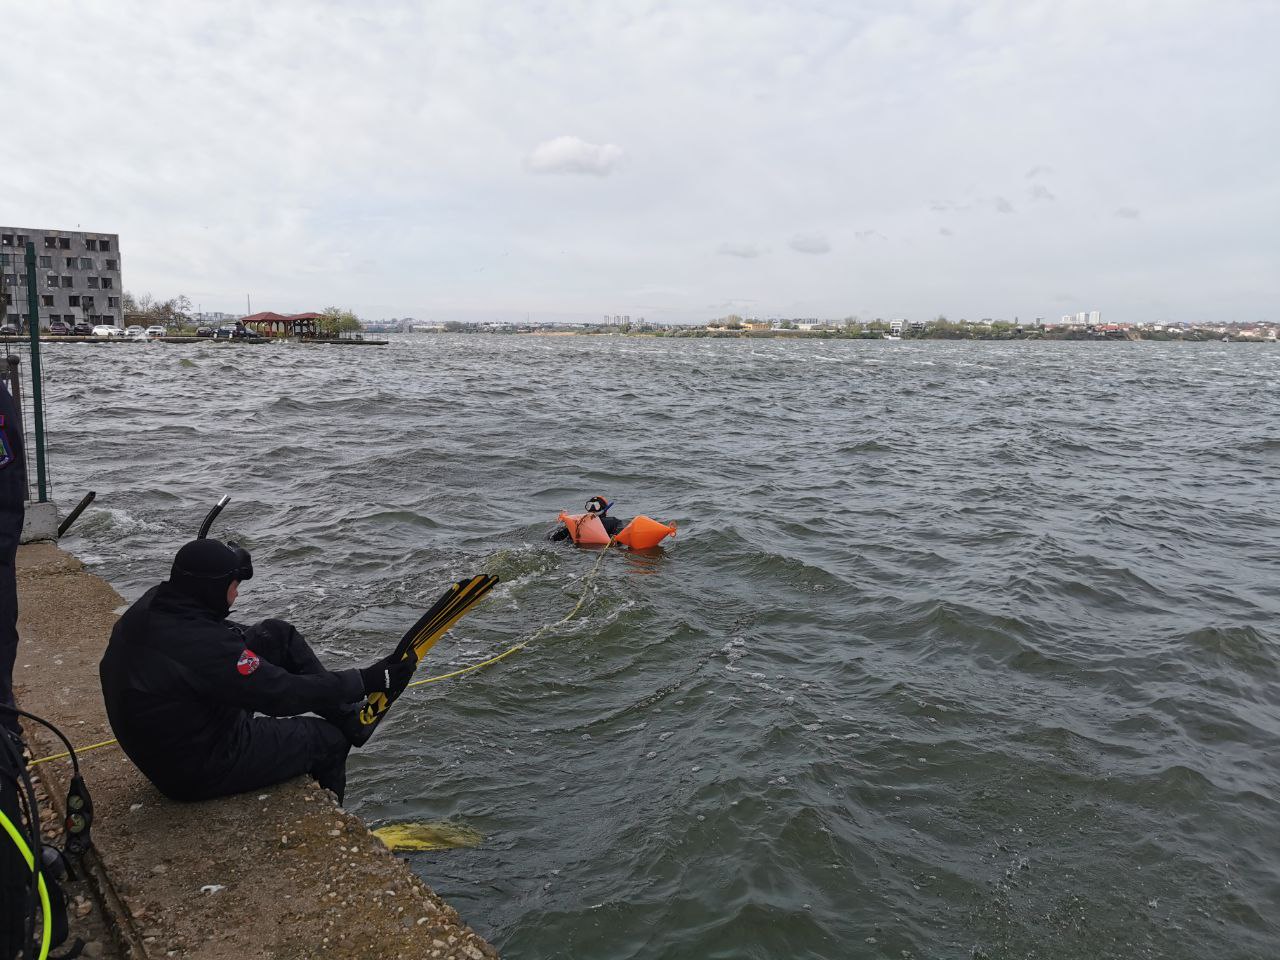 Au fost reluate căutarile presupusului cadavru care pluteste pe lacul Siutghiol în zona Ovidiu